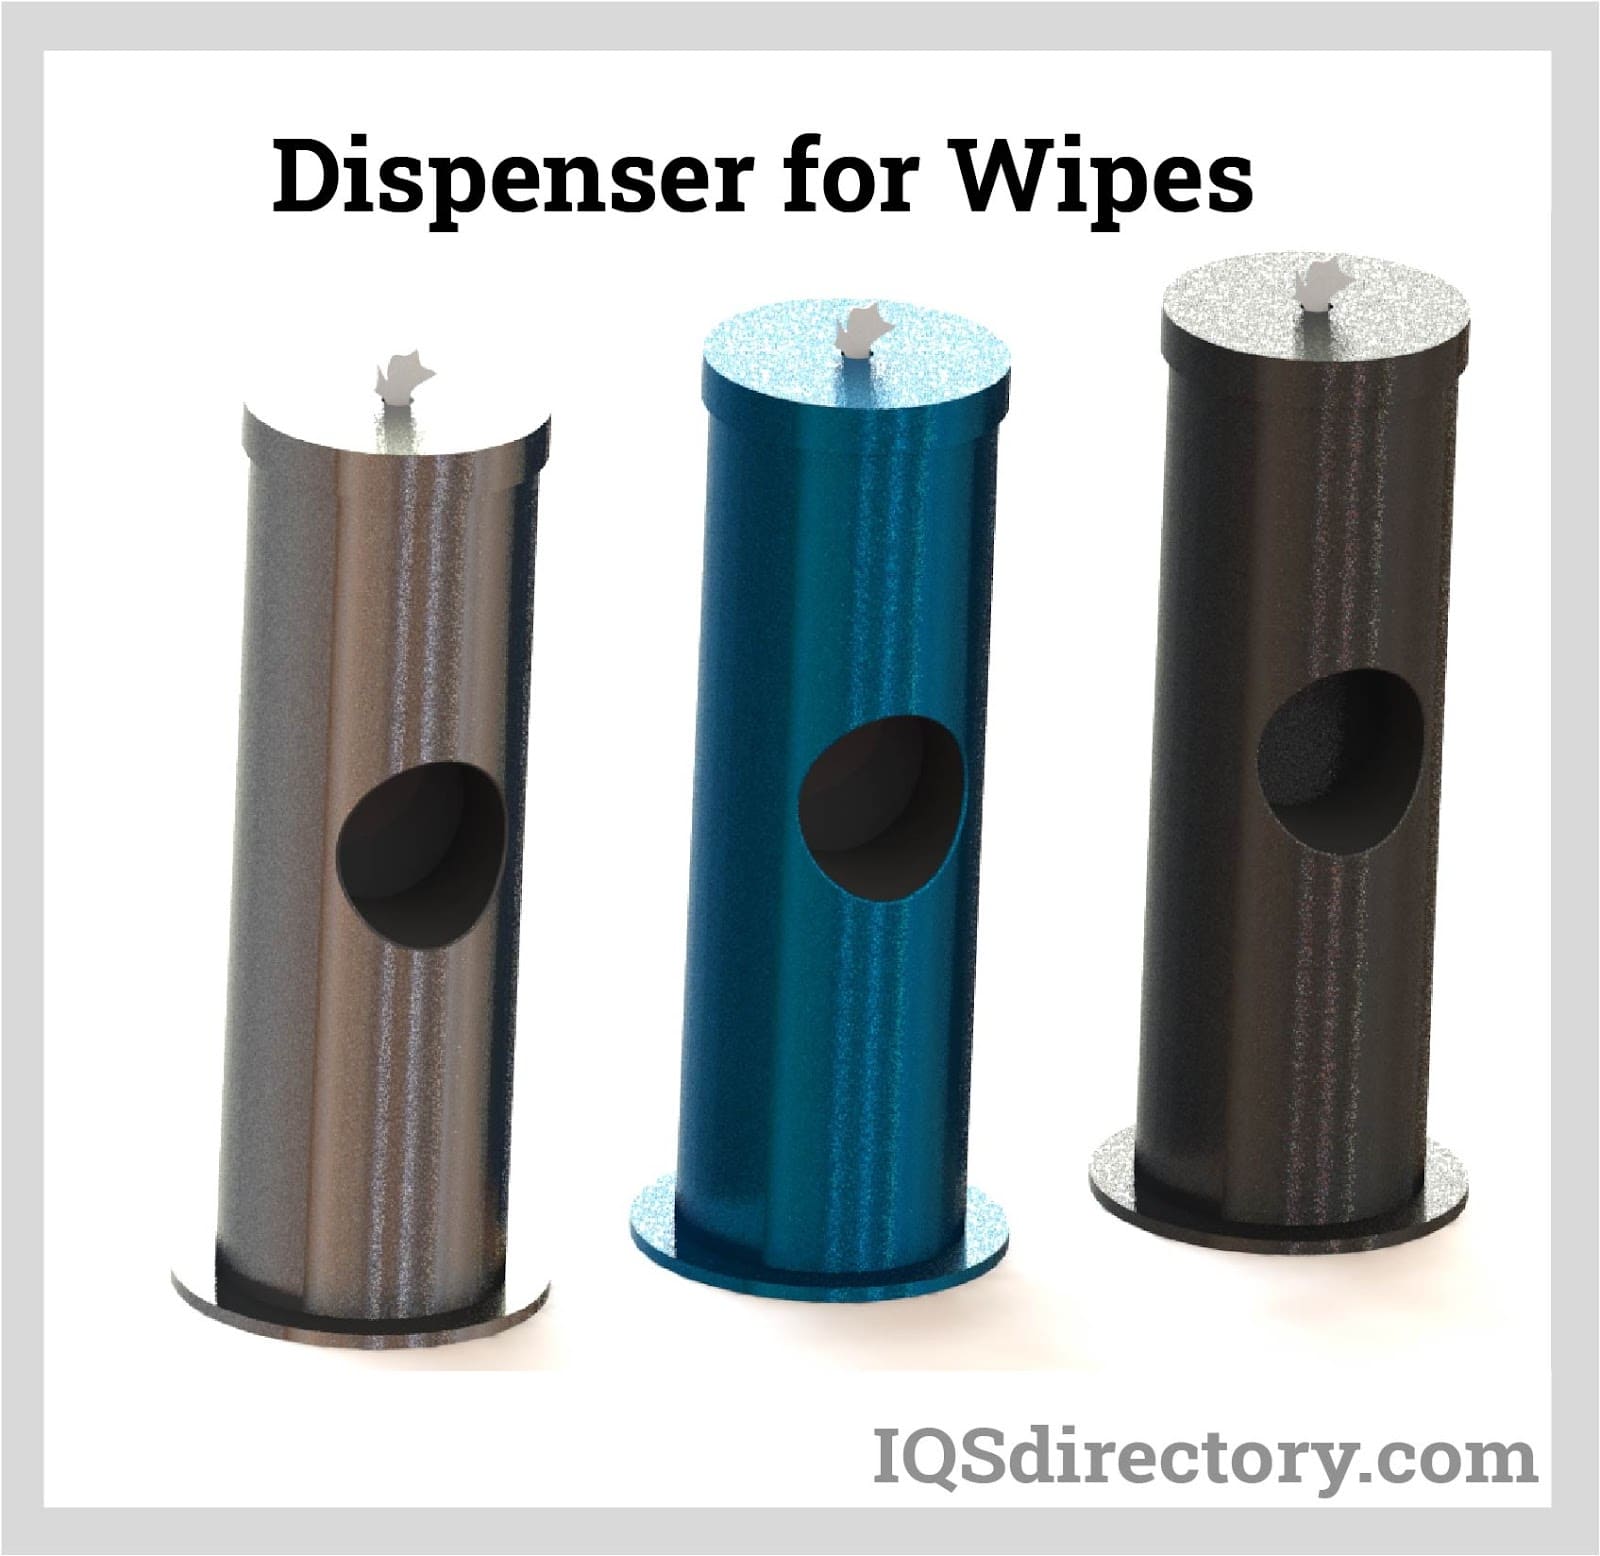 dispenser for wipes